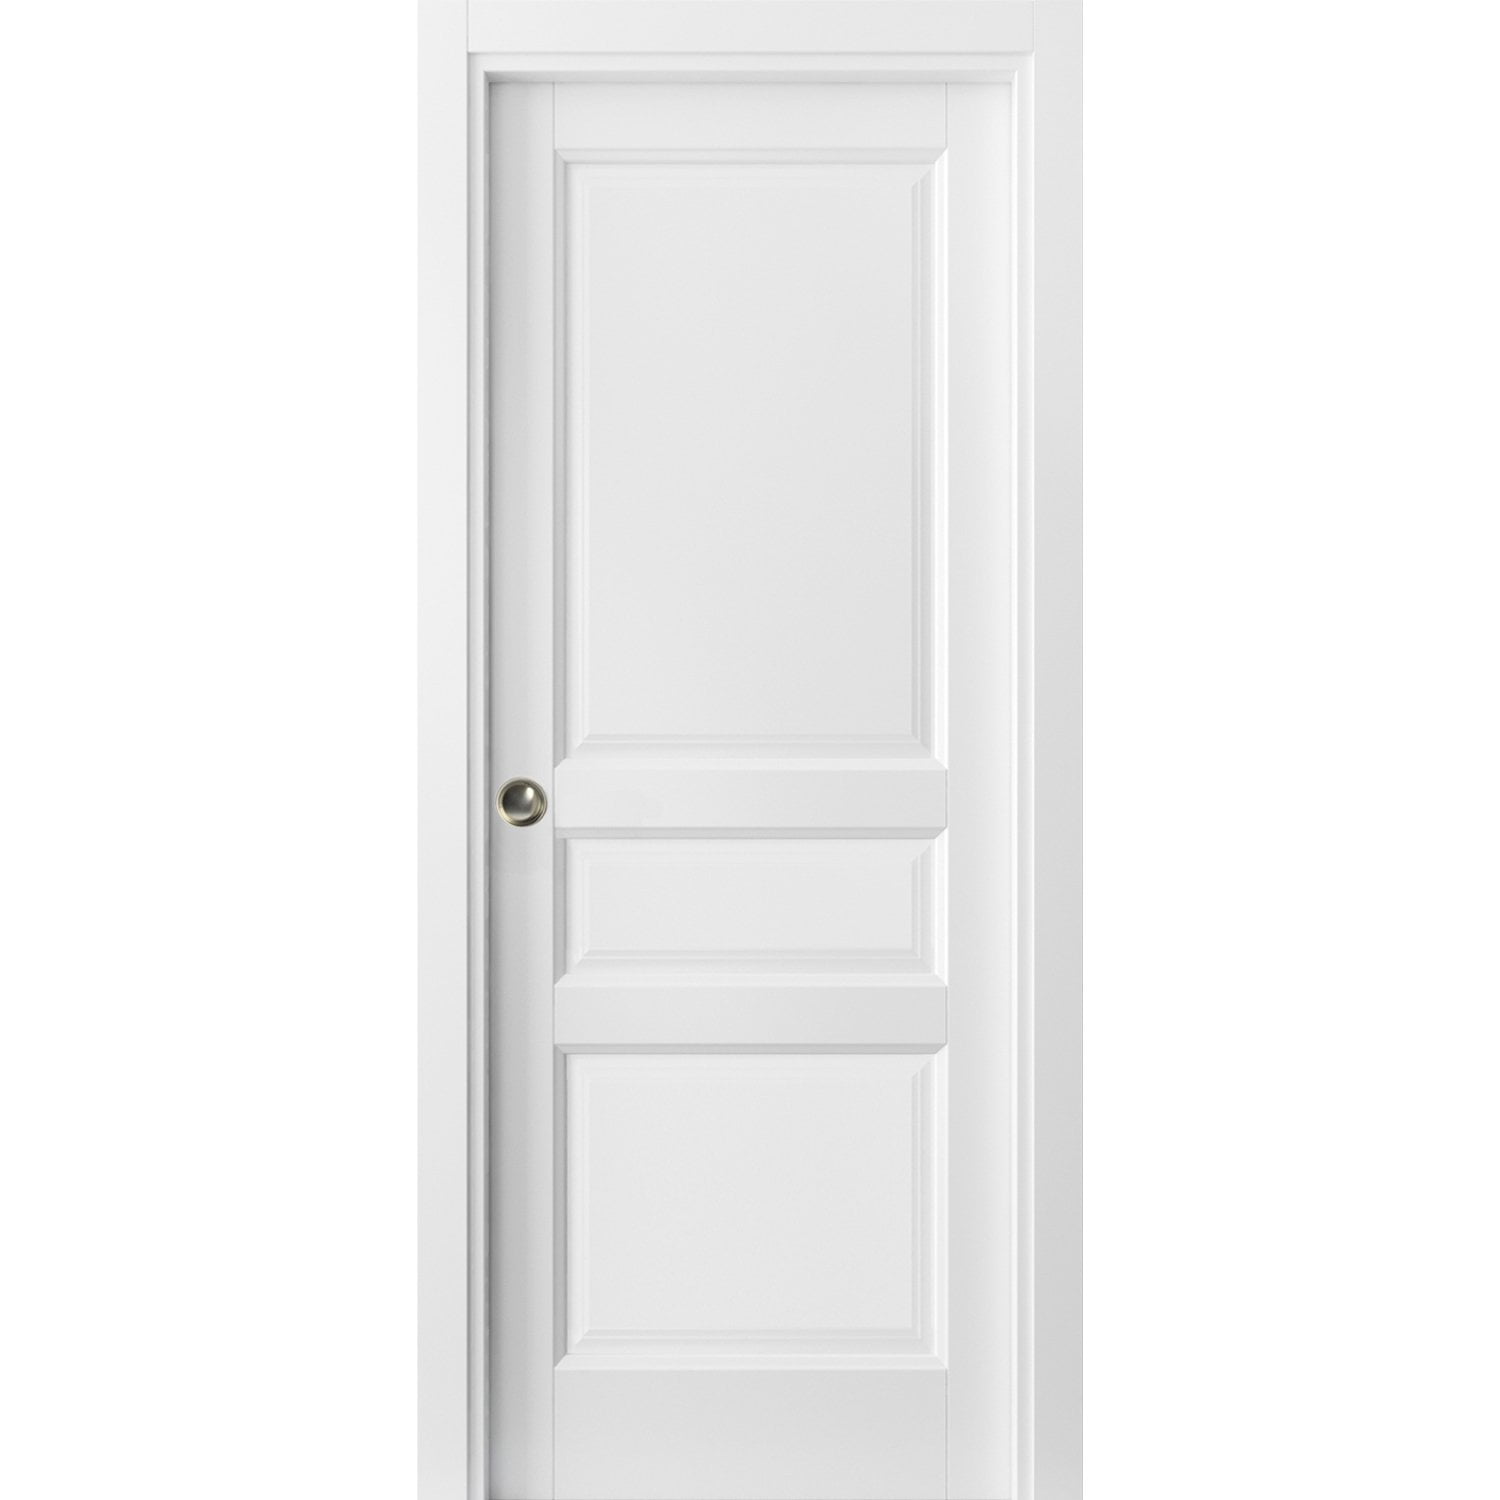 3 Panel Pocket Door 36 x 80 with Frames | Lucia 31 Matte White | Kit 31 3 4 X 80 Interior Door